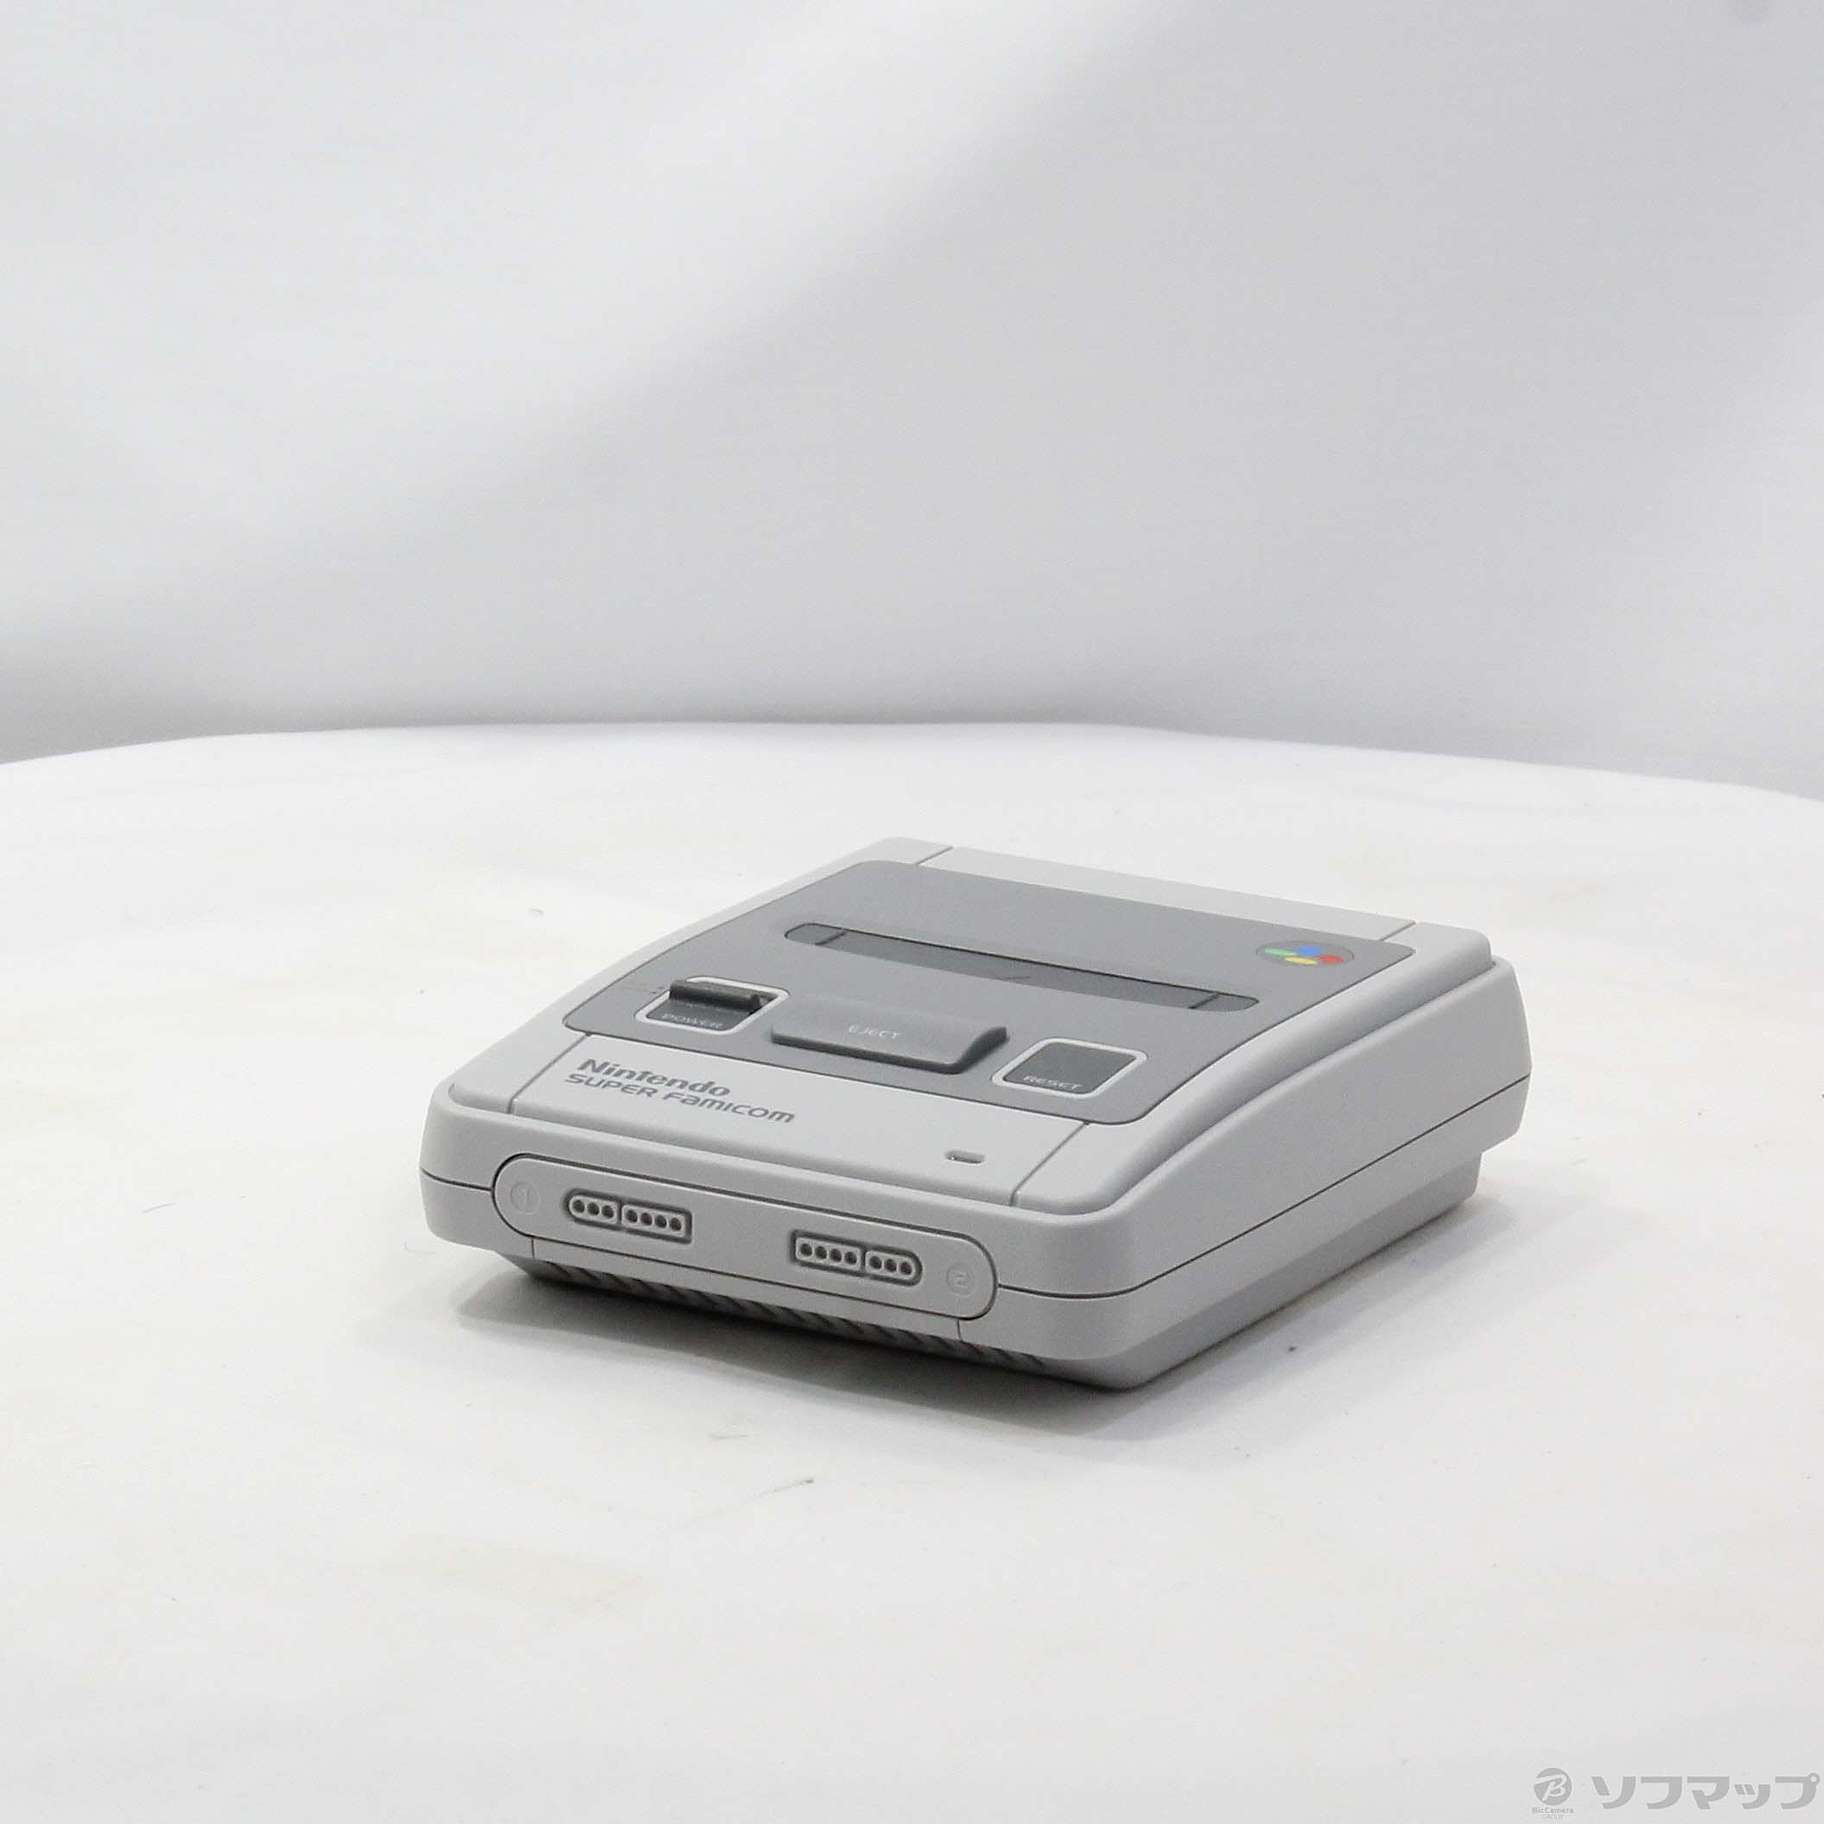 Nintendo ニンテンドークラシックミニ スーパーファミコン